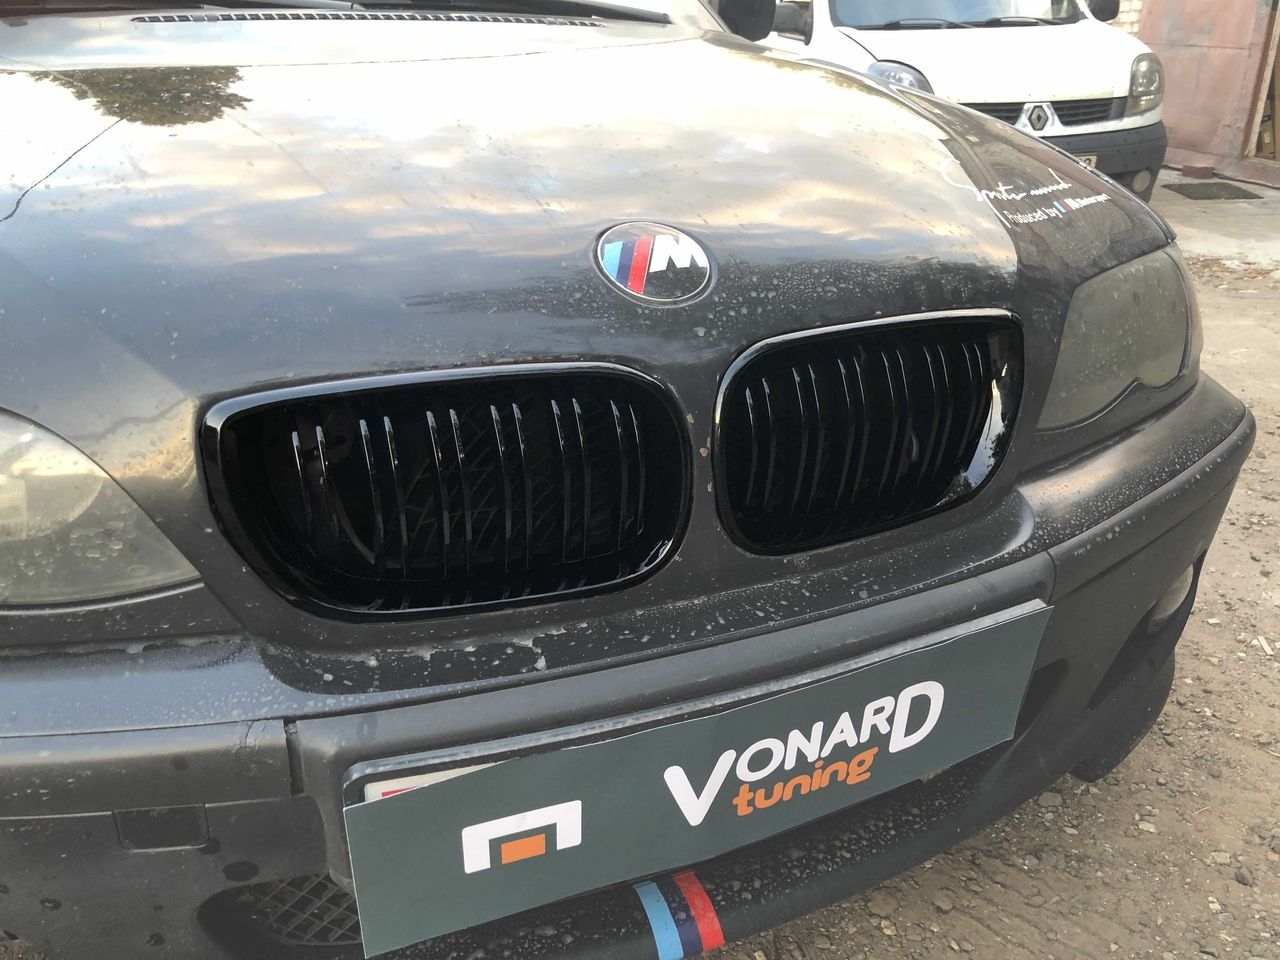 Изображение решётки радиатора BMW E46 седан 01-05 M-стиль сдвоенные артикул 1214340